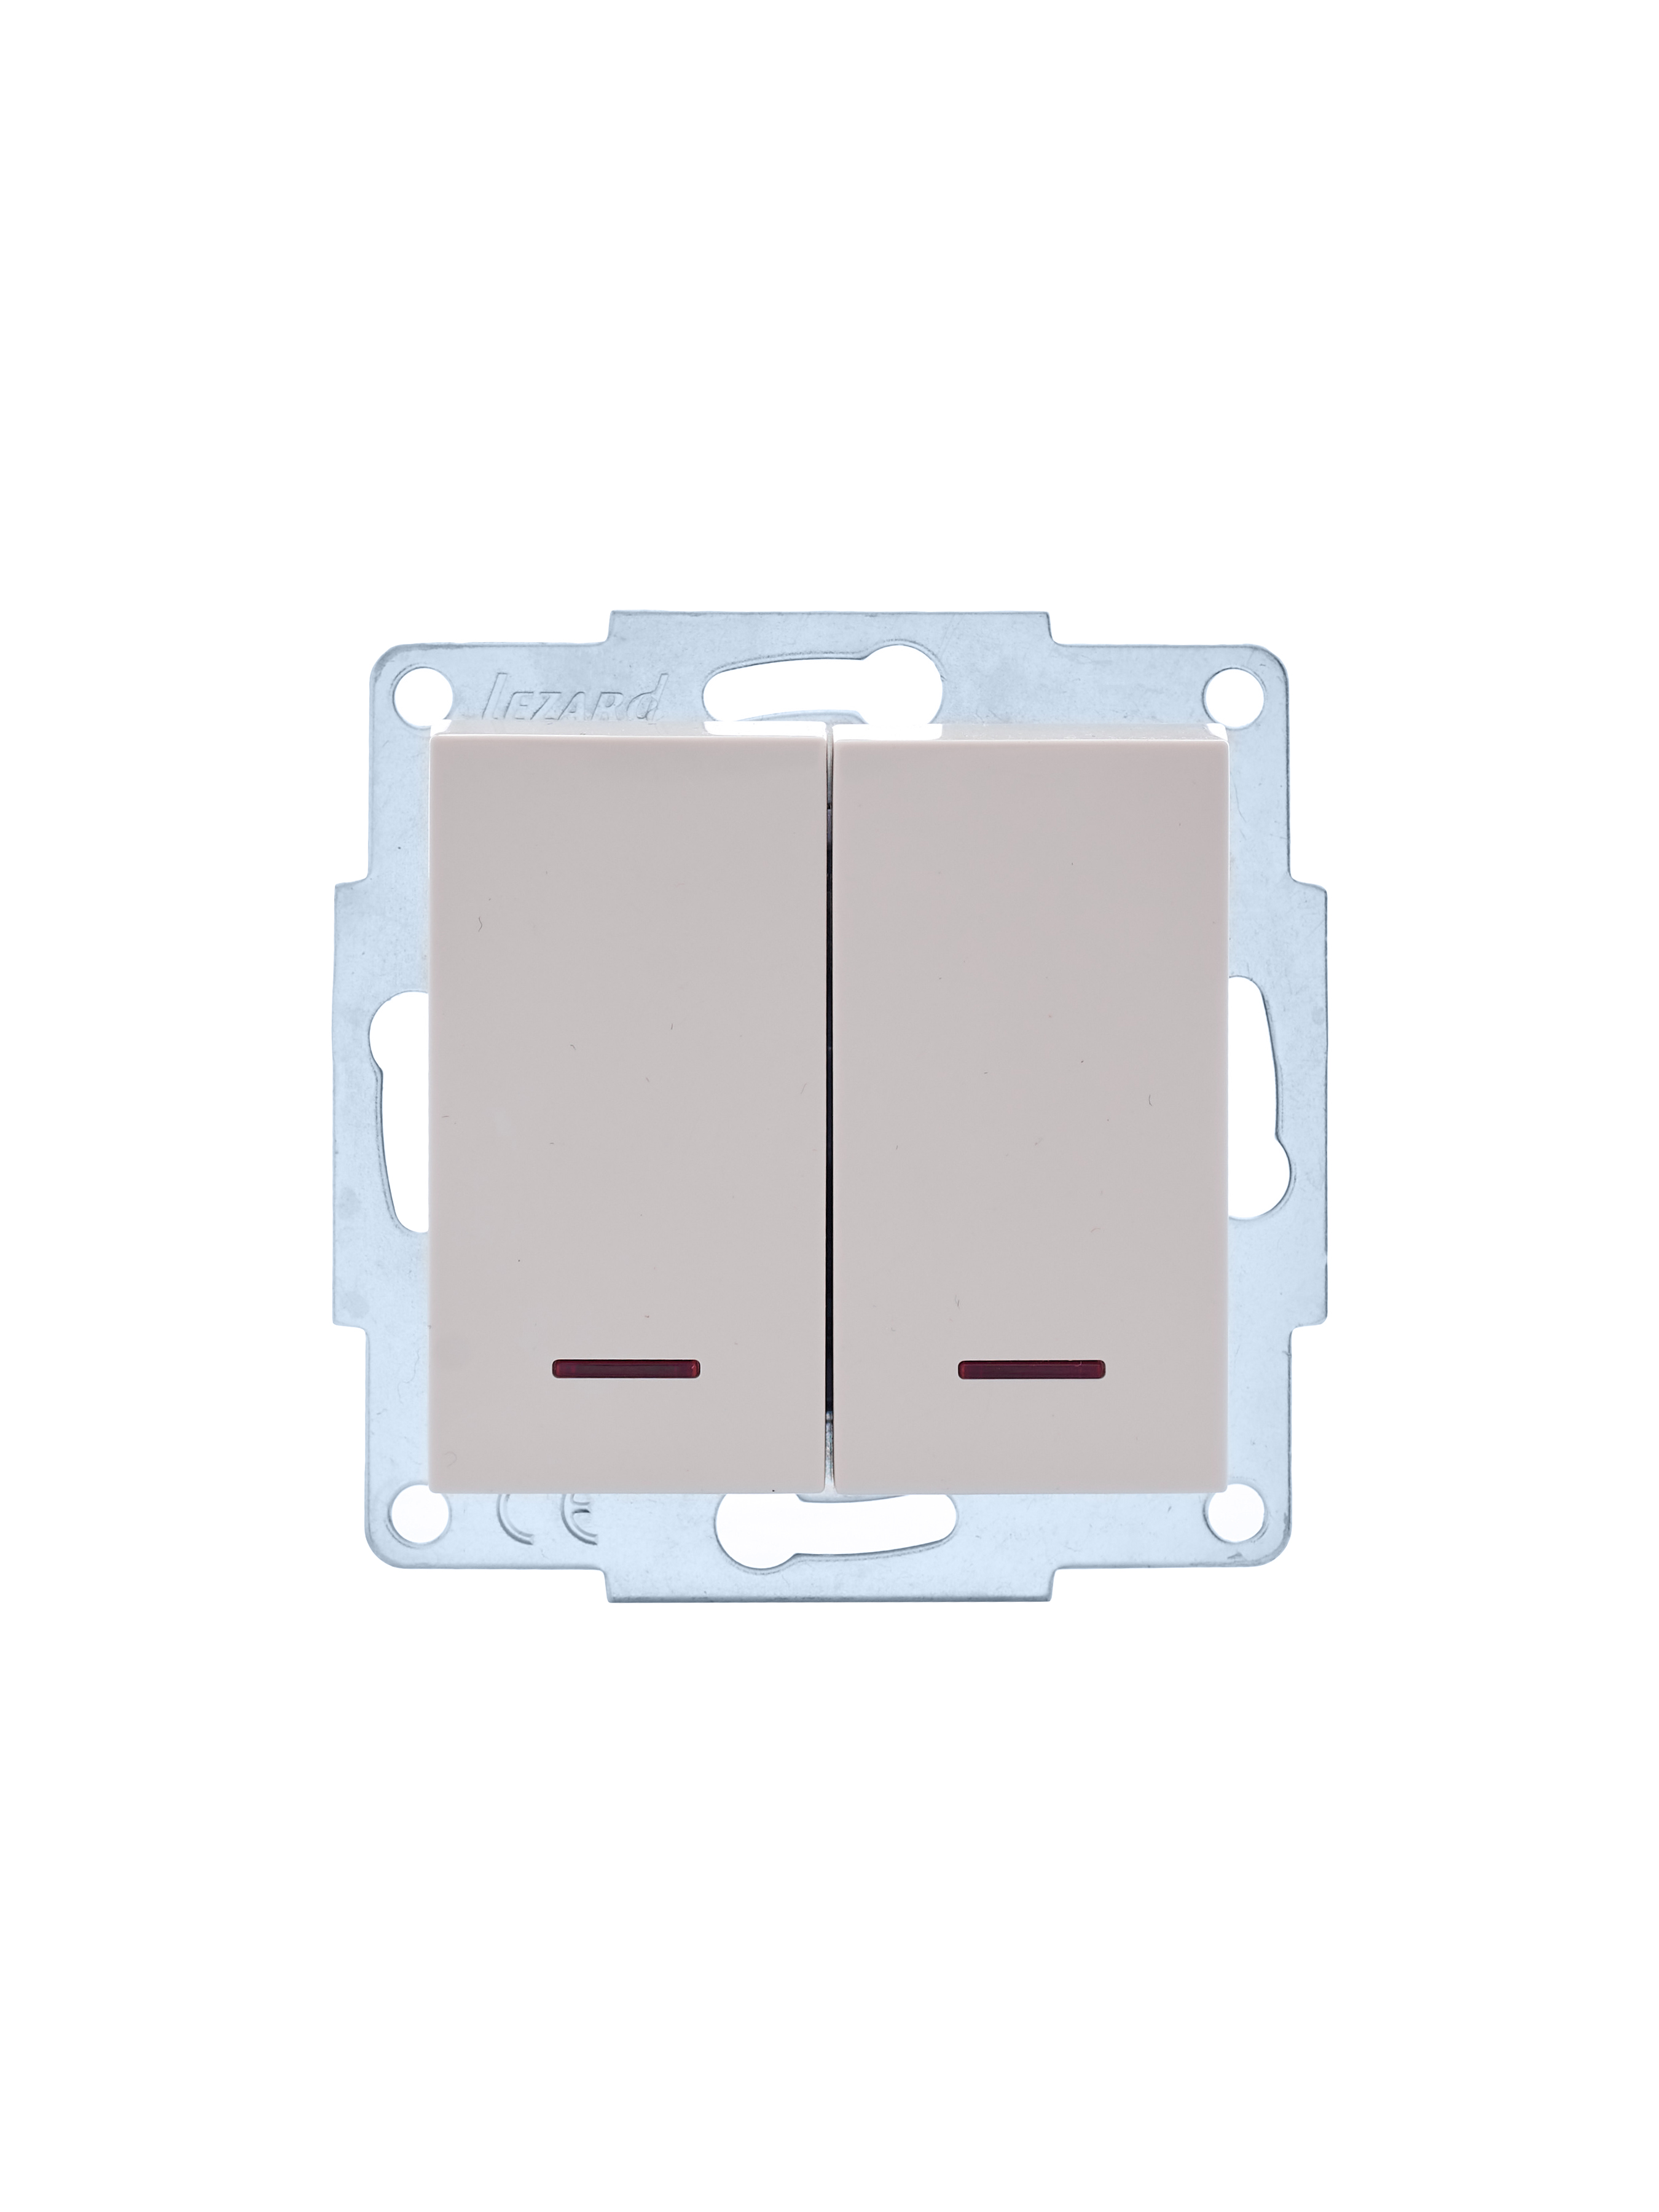 Выключатель LEZARD VESNA 742-0388-112, 2кл., индикатор/подсветка, скрытый монтаж, механизм без накладки и рамки, кремовый (742-0388-112)